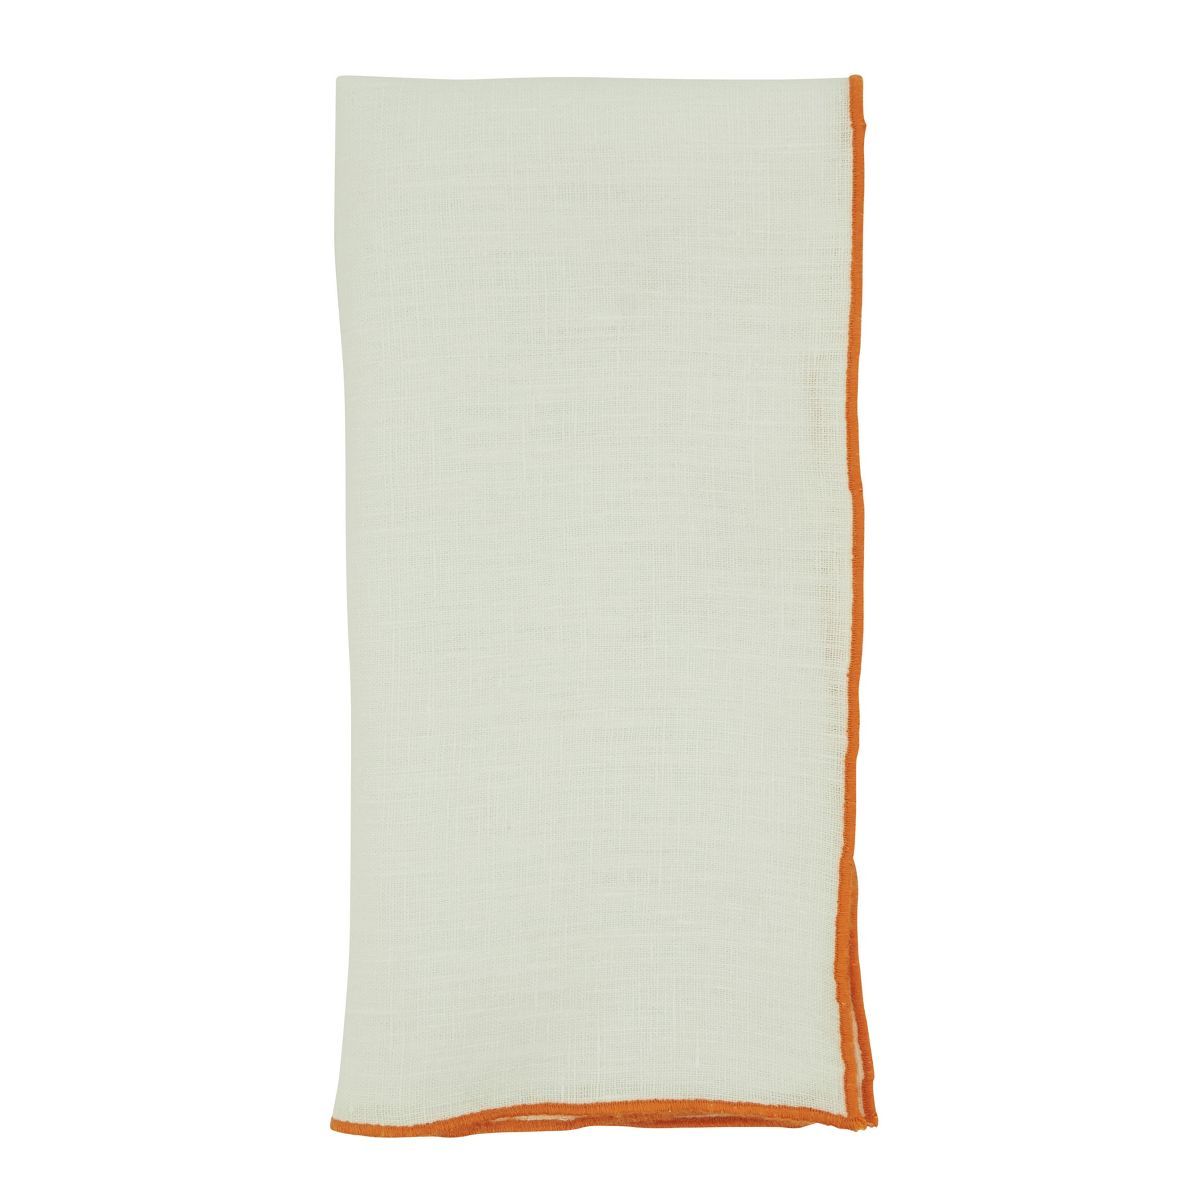 Saro Lifestyle Stitched Border Stonewashed Linen Napkins (Set of 4) | Target